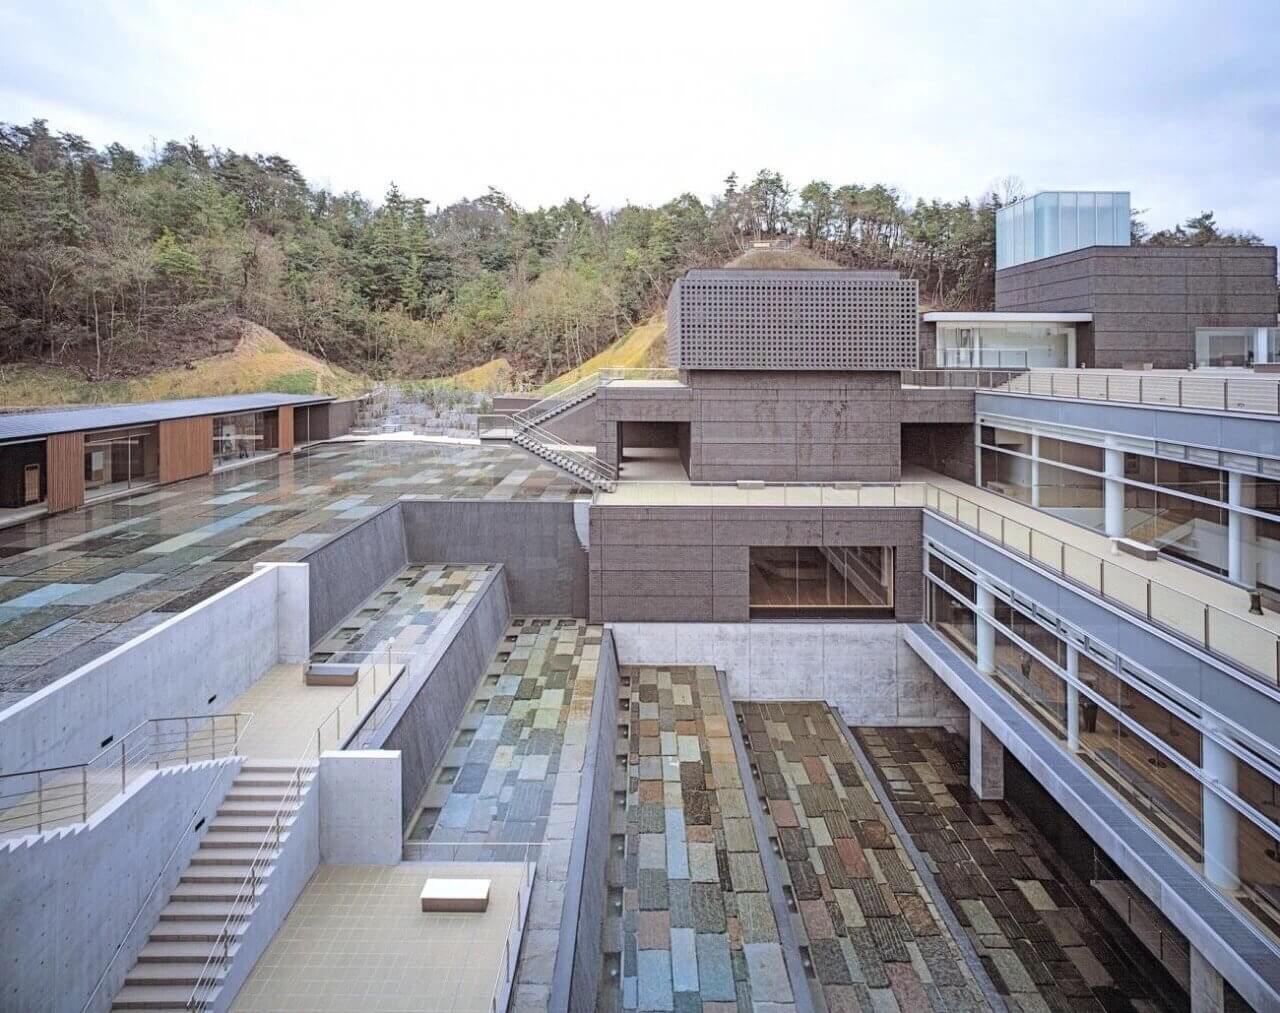 2019 年普利兹克建筑奖公布，日本建筑大师矶崎新获得了这一殊荣